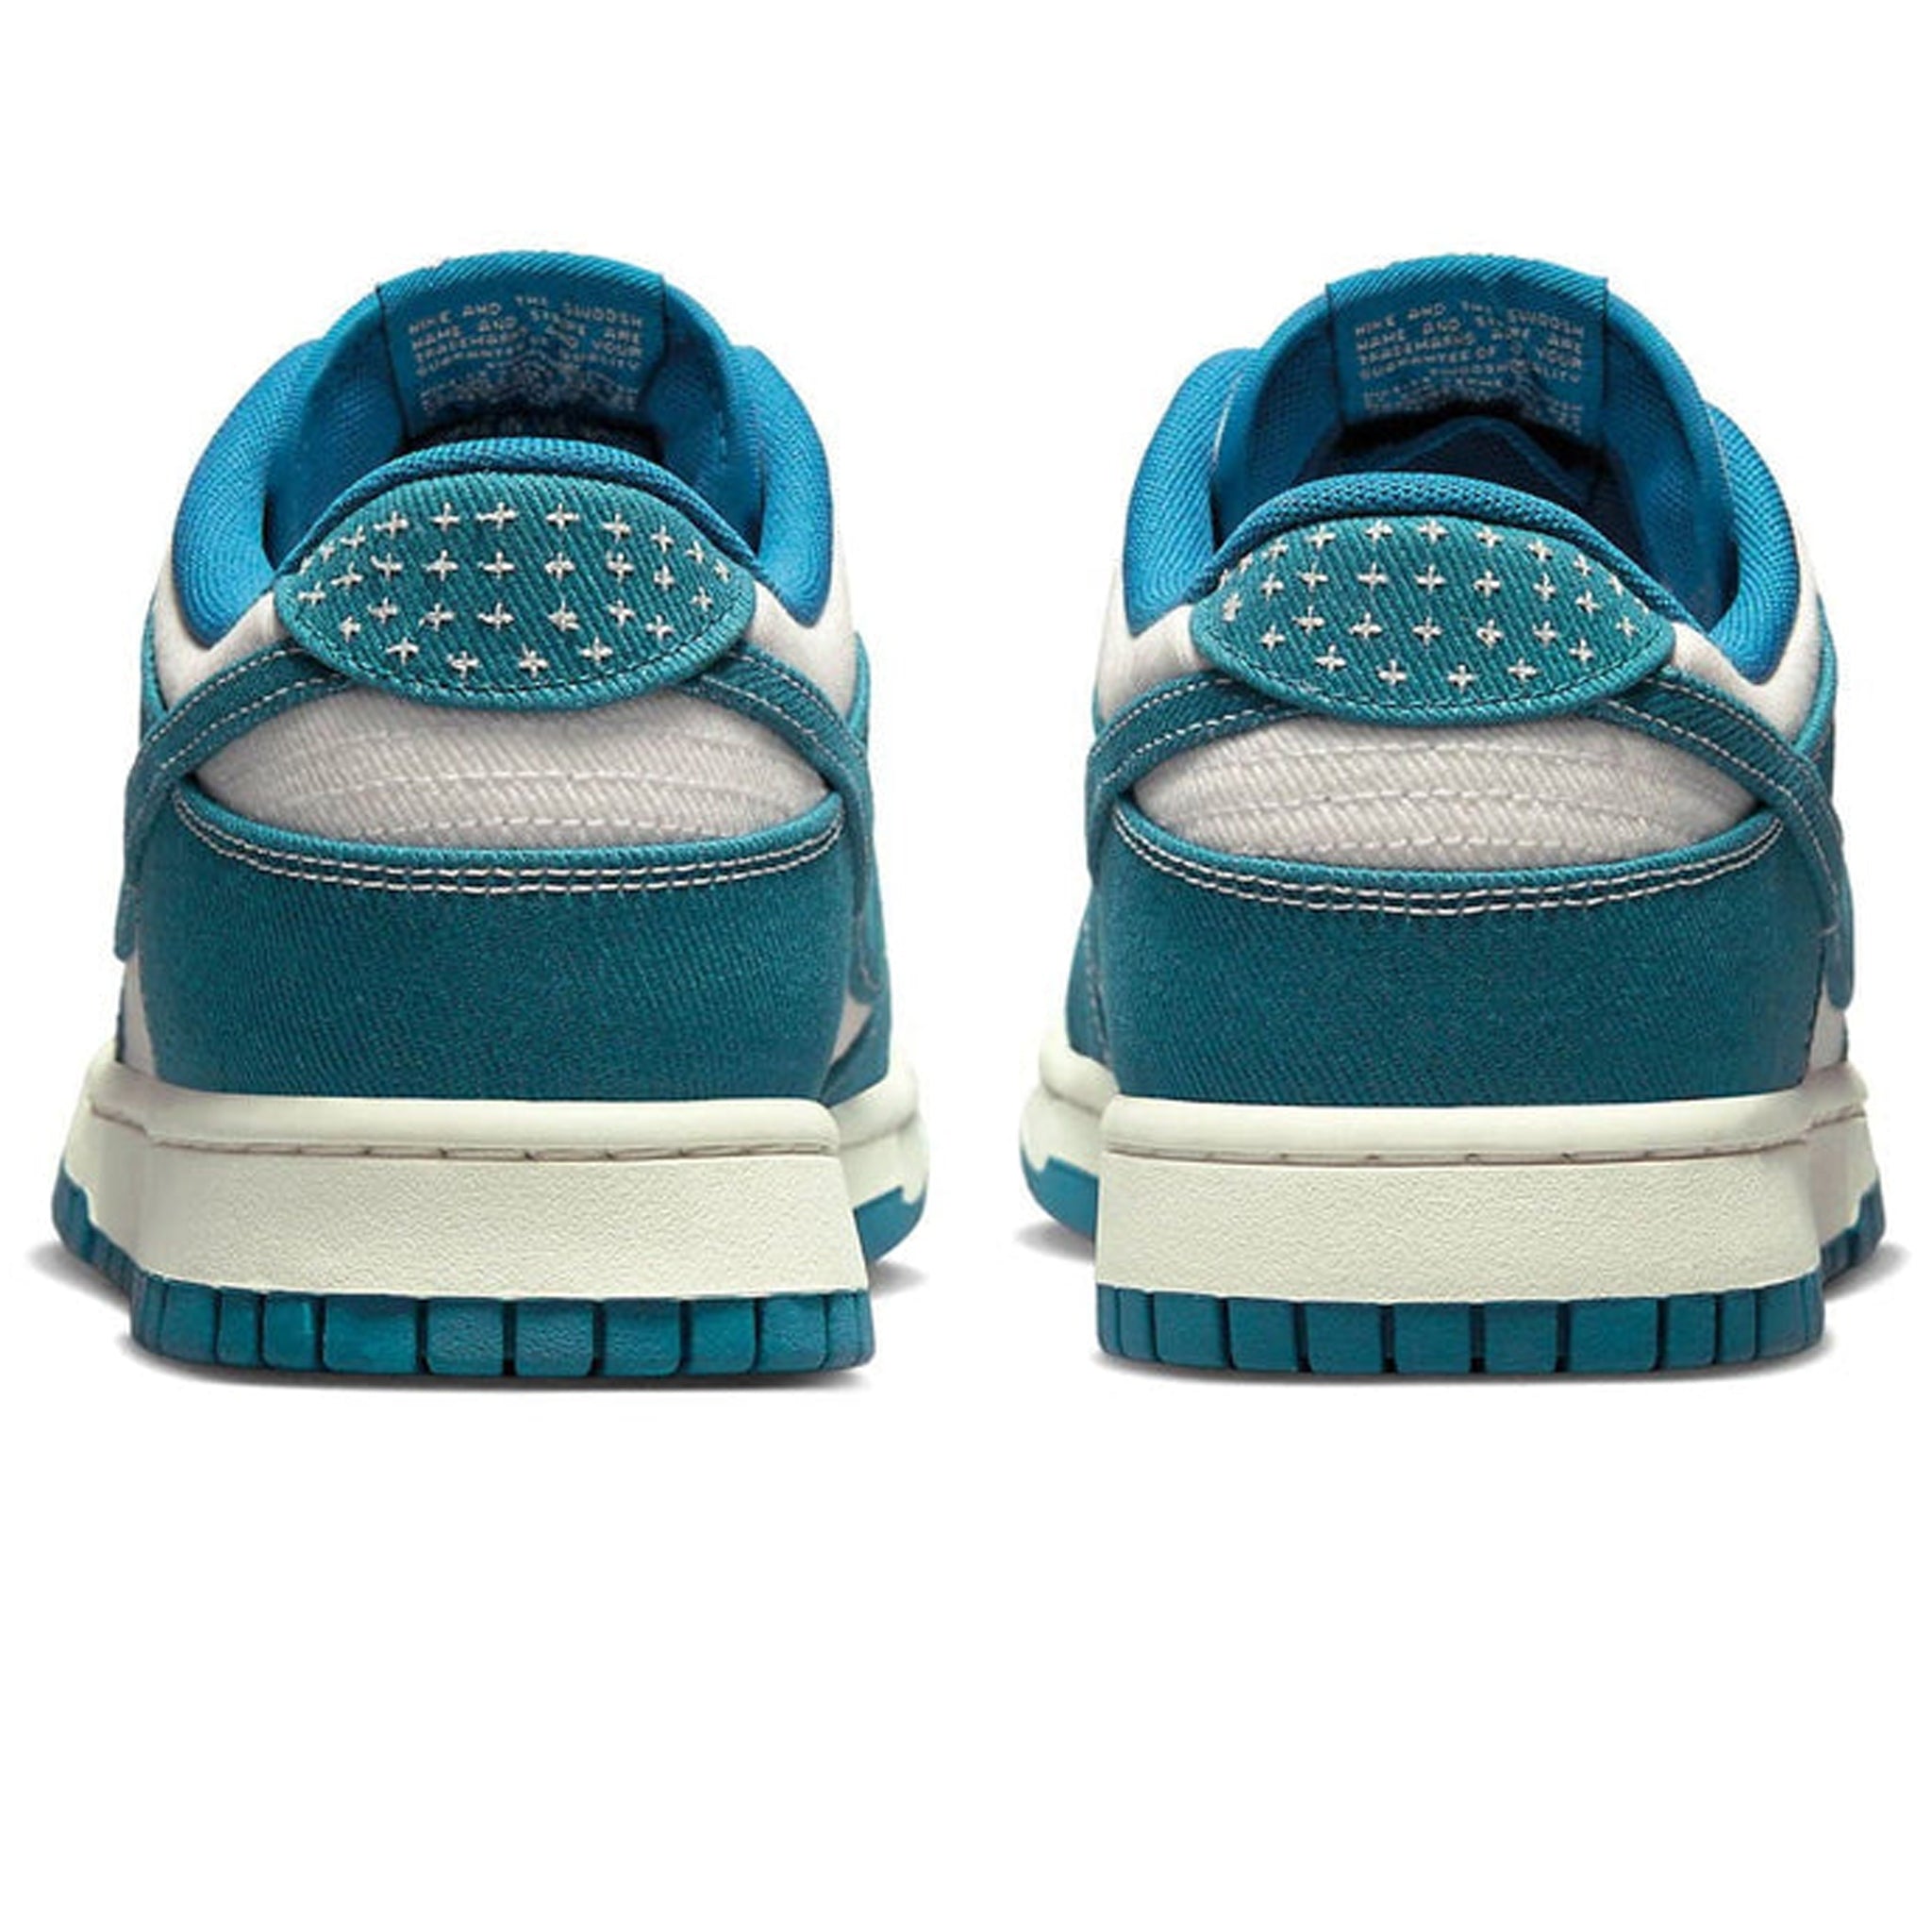 Image of Nike Dunk Low Industrial Blue Sashiko